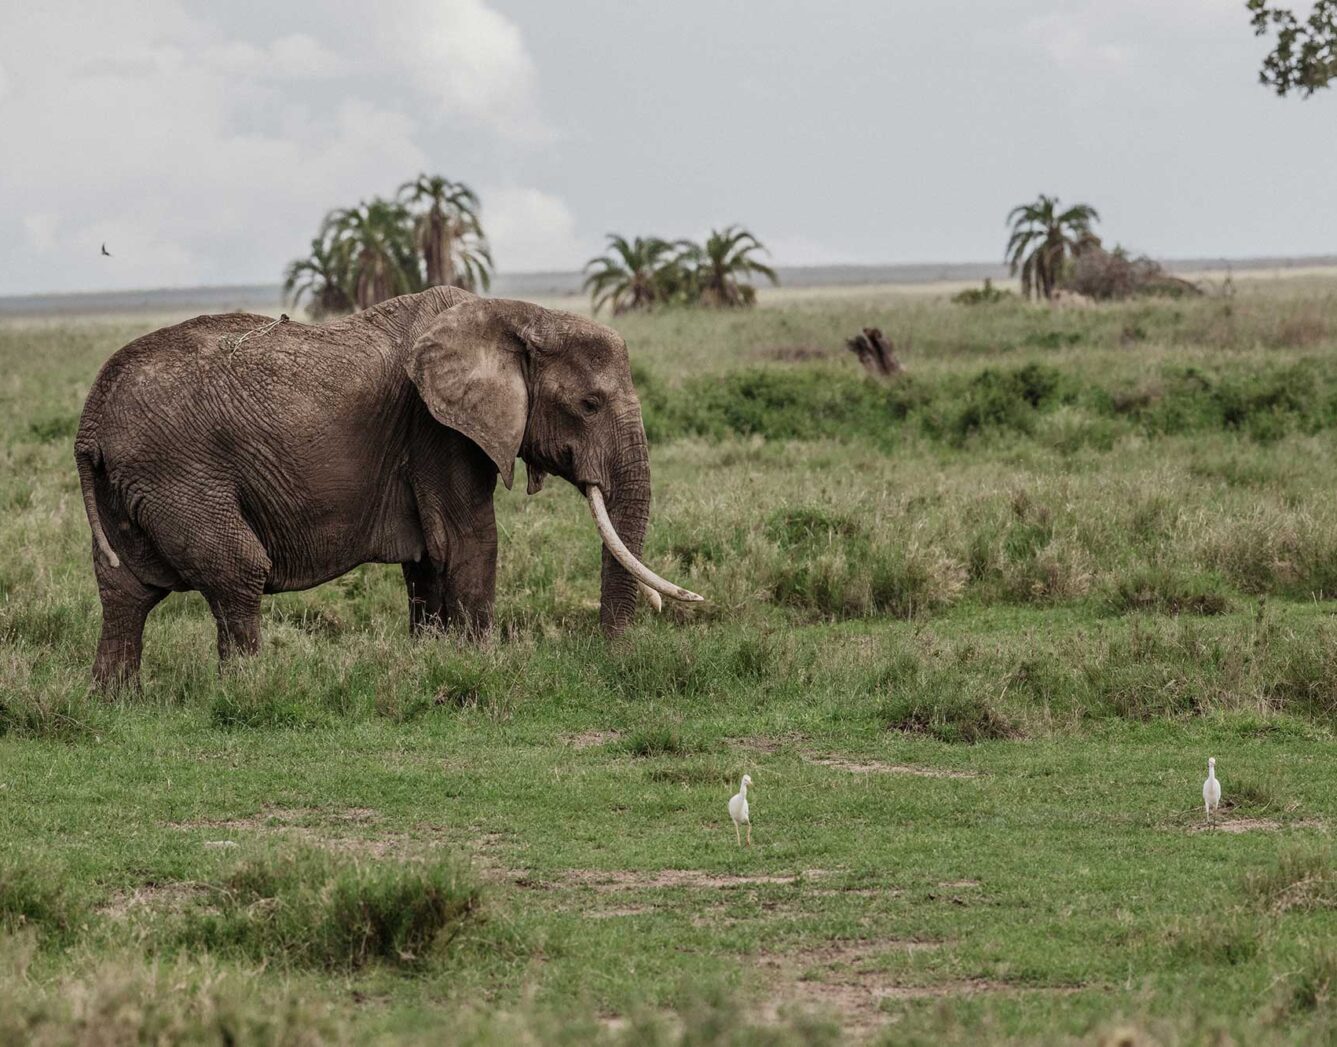 An elephant walks through the grass